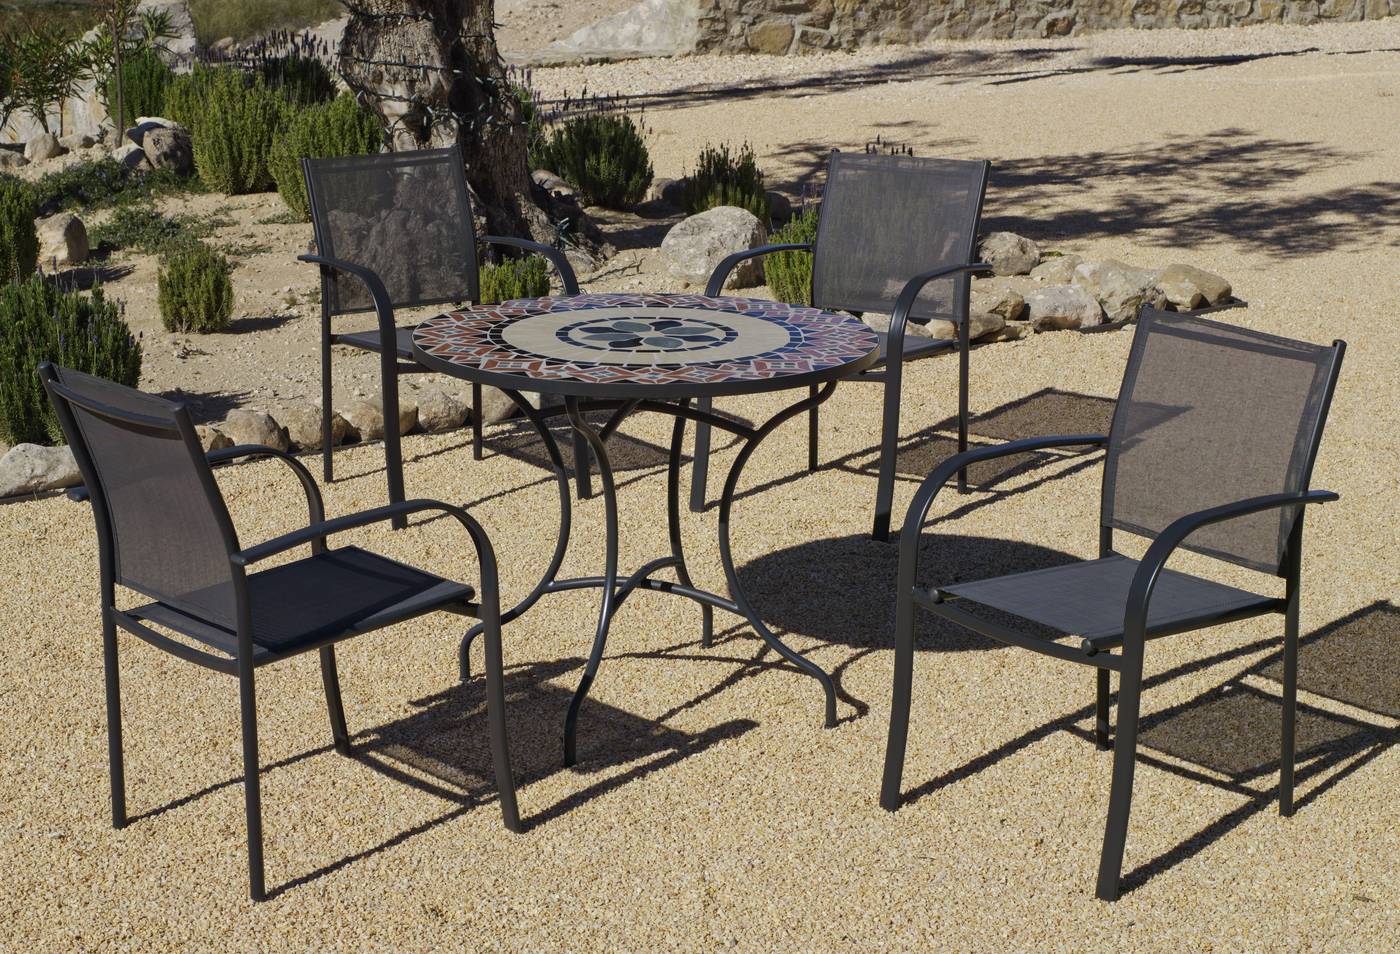 Sillón Acero Europa - Sillón apilable de acero color antracita, con asiento y respaldo de Textilen